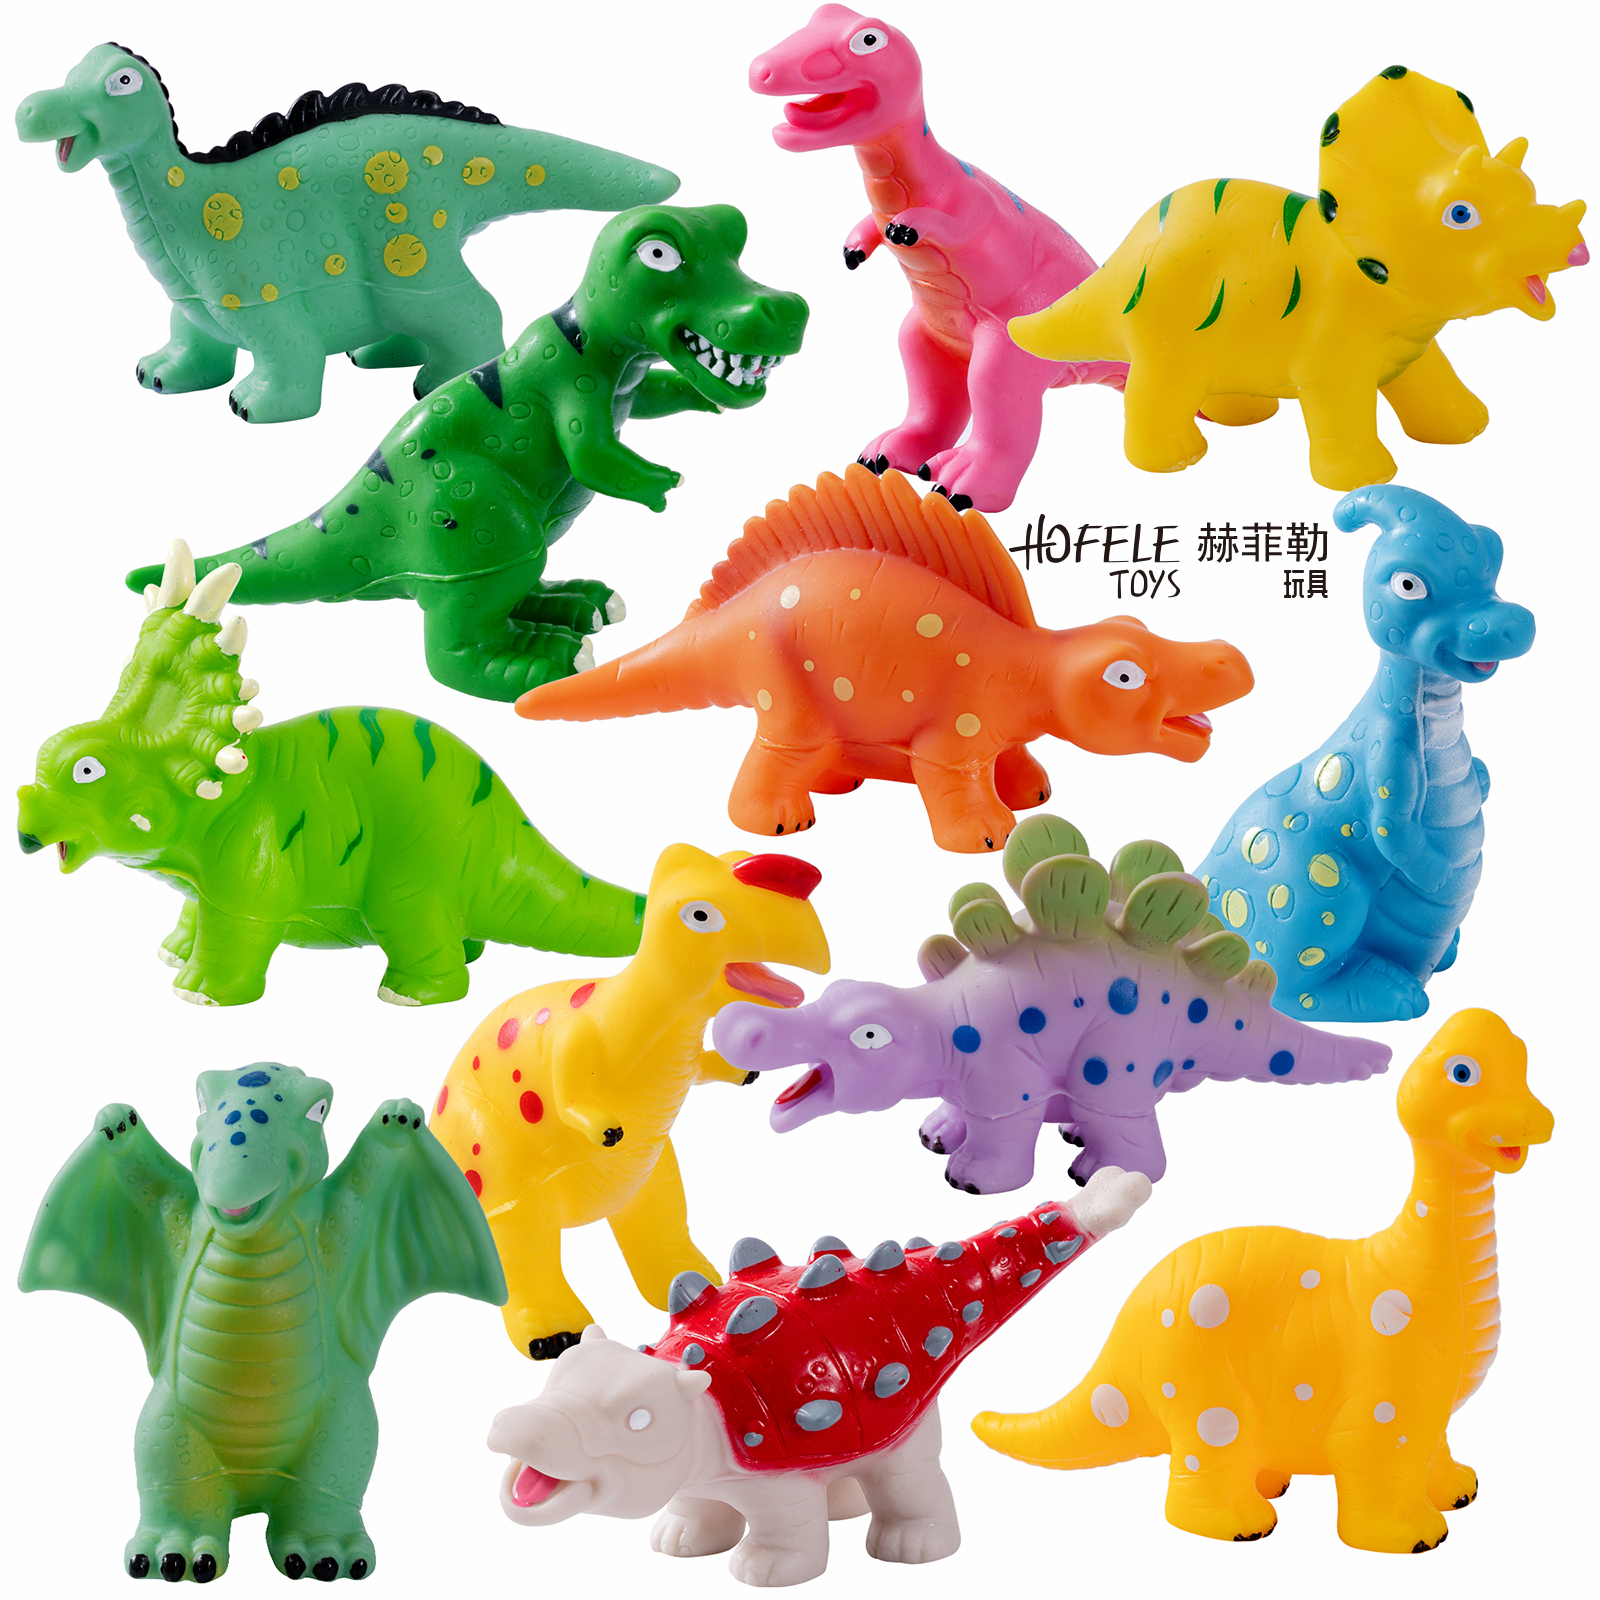 热销玩具恐龙动物玩具儿童感应玩具 互动趣味益智游戏礼品 HOFELE 赫菲勒